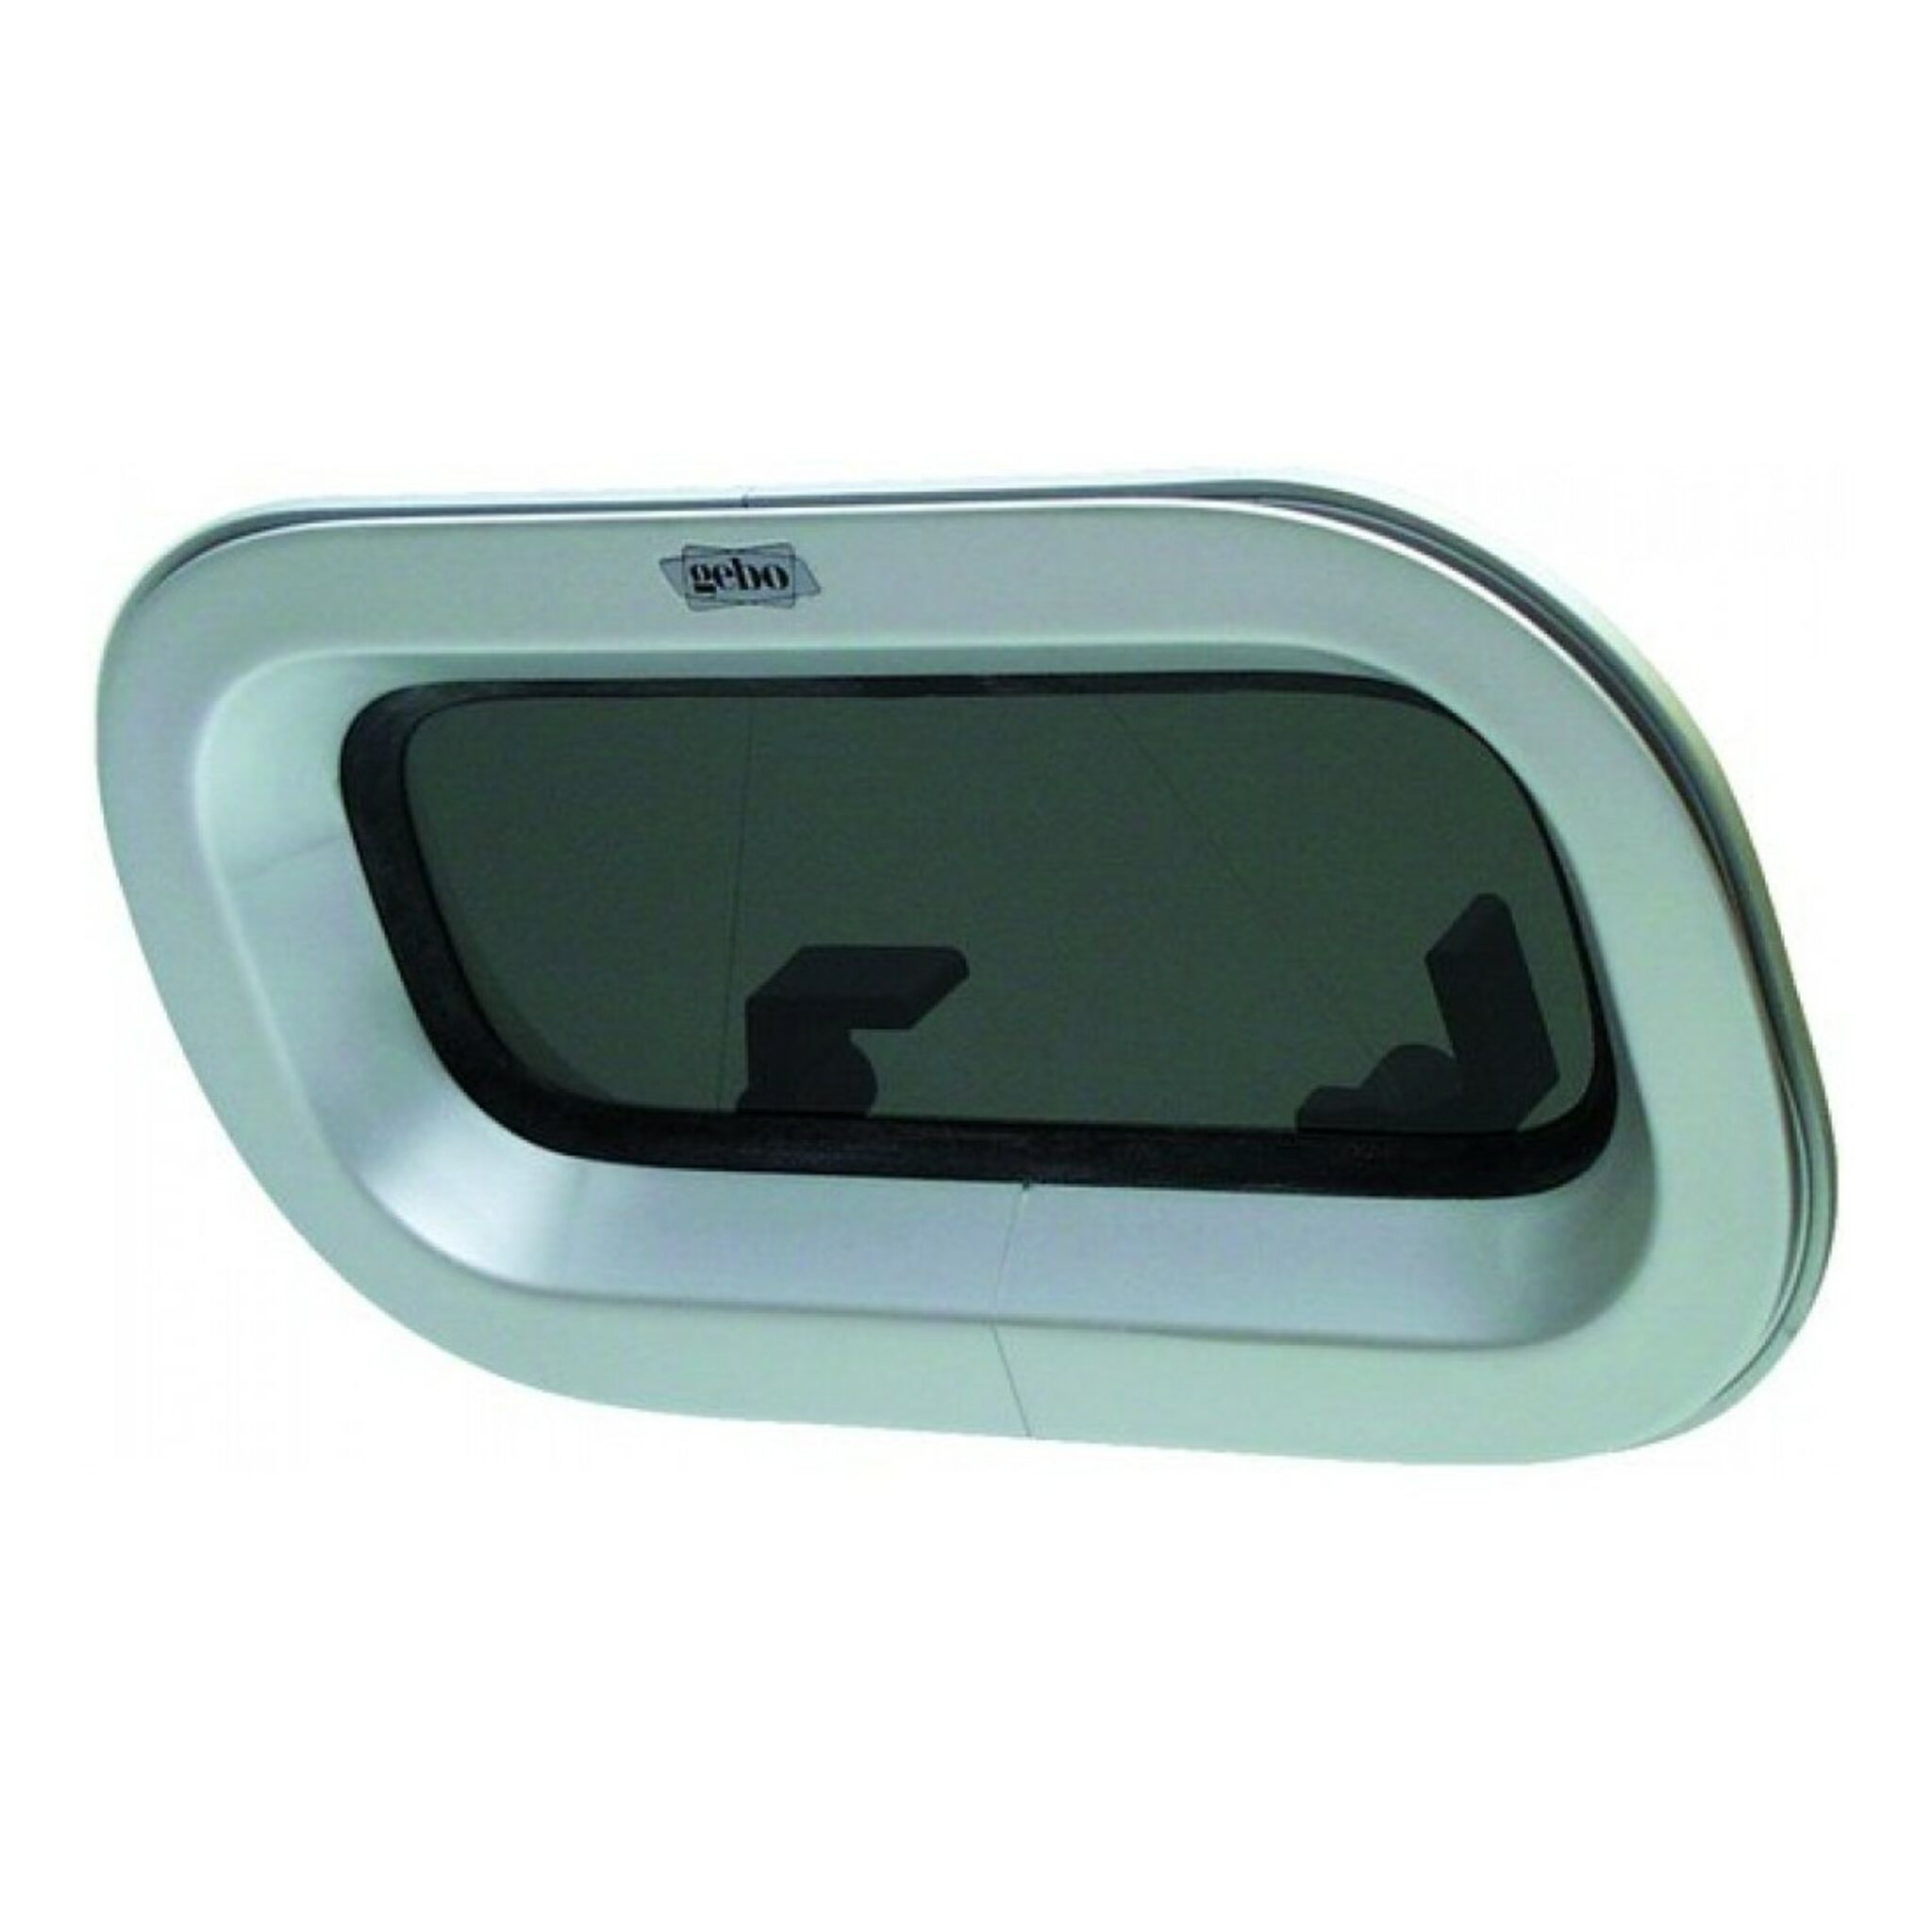 GEBO Econoline window/fly screen, 304x155 mm